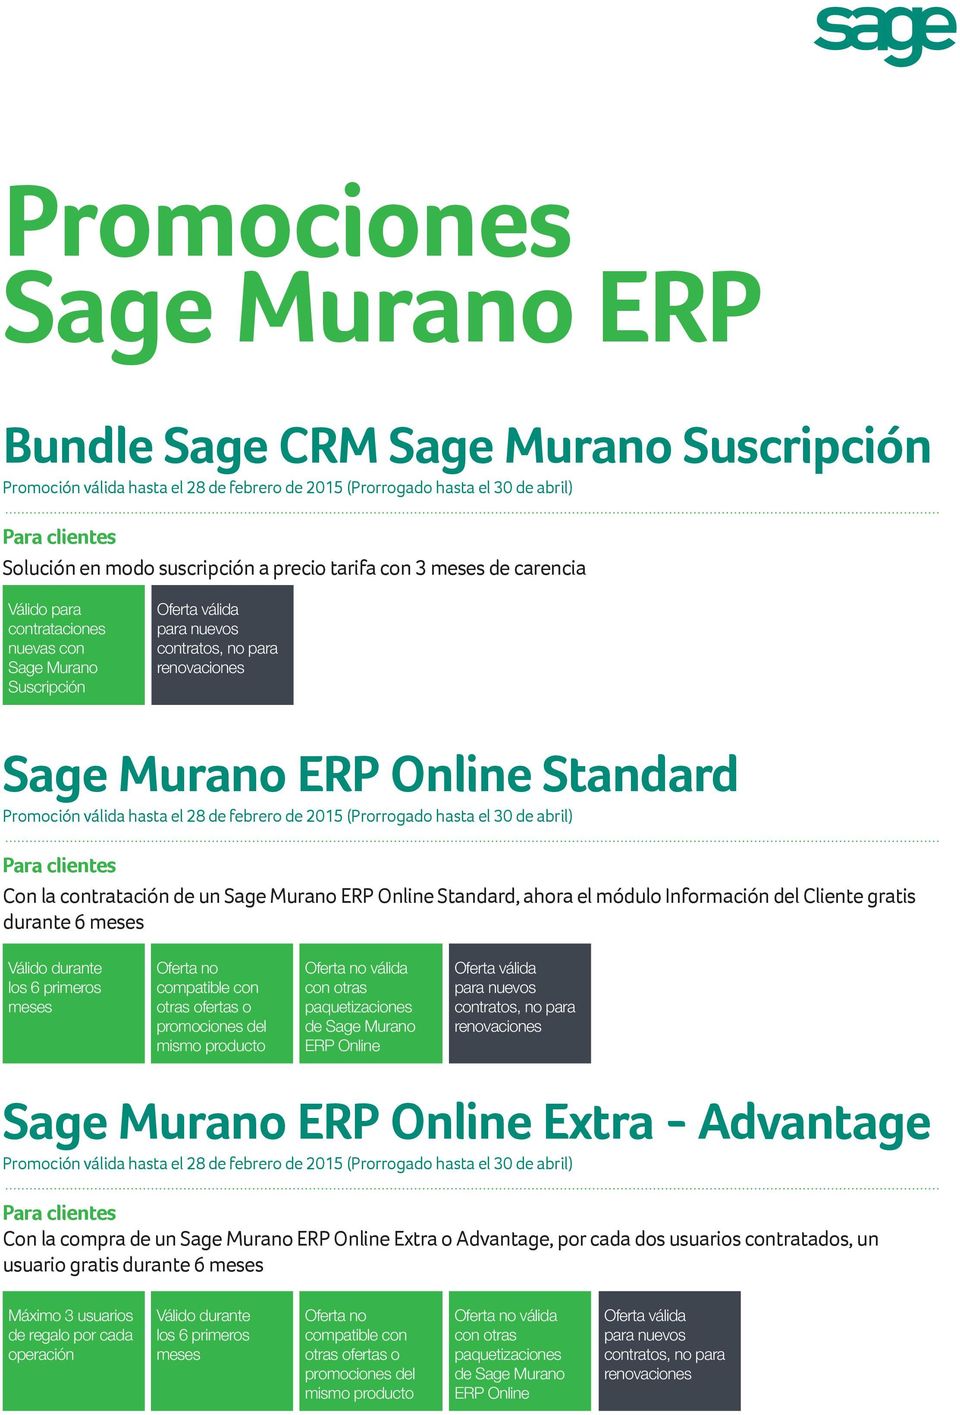 6 válida con otras paquetizaciones de Sage Murano ERP Online Sage Murano ERP Online Extra - Advantage Con la compra de un Sage Murano ERP Online Extra o Advantage,